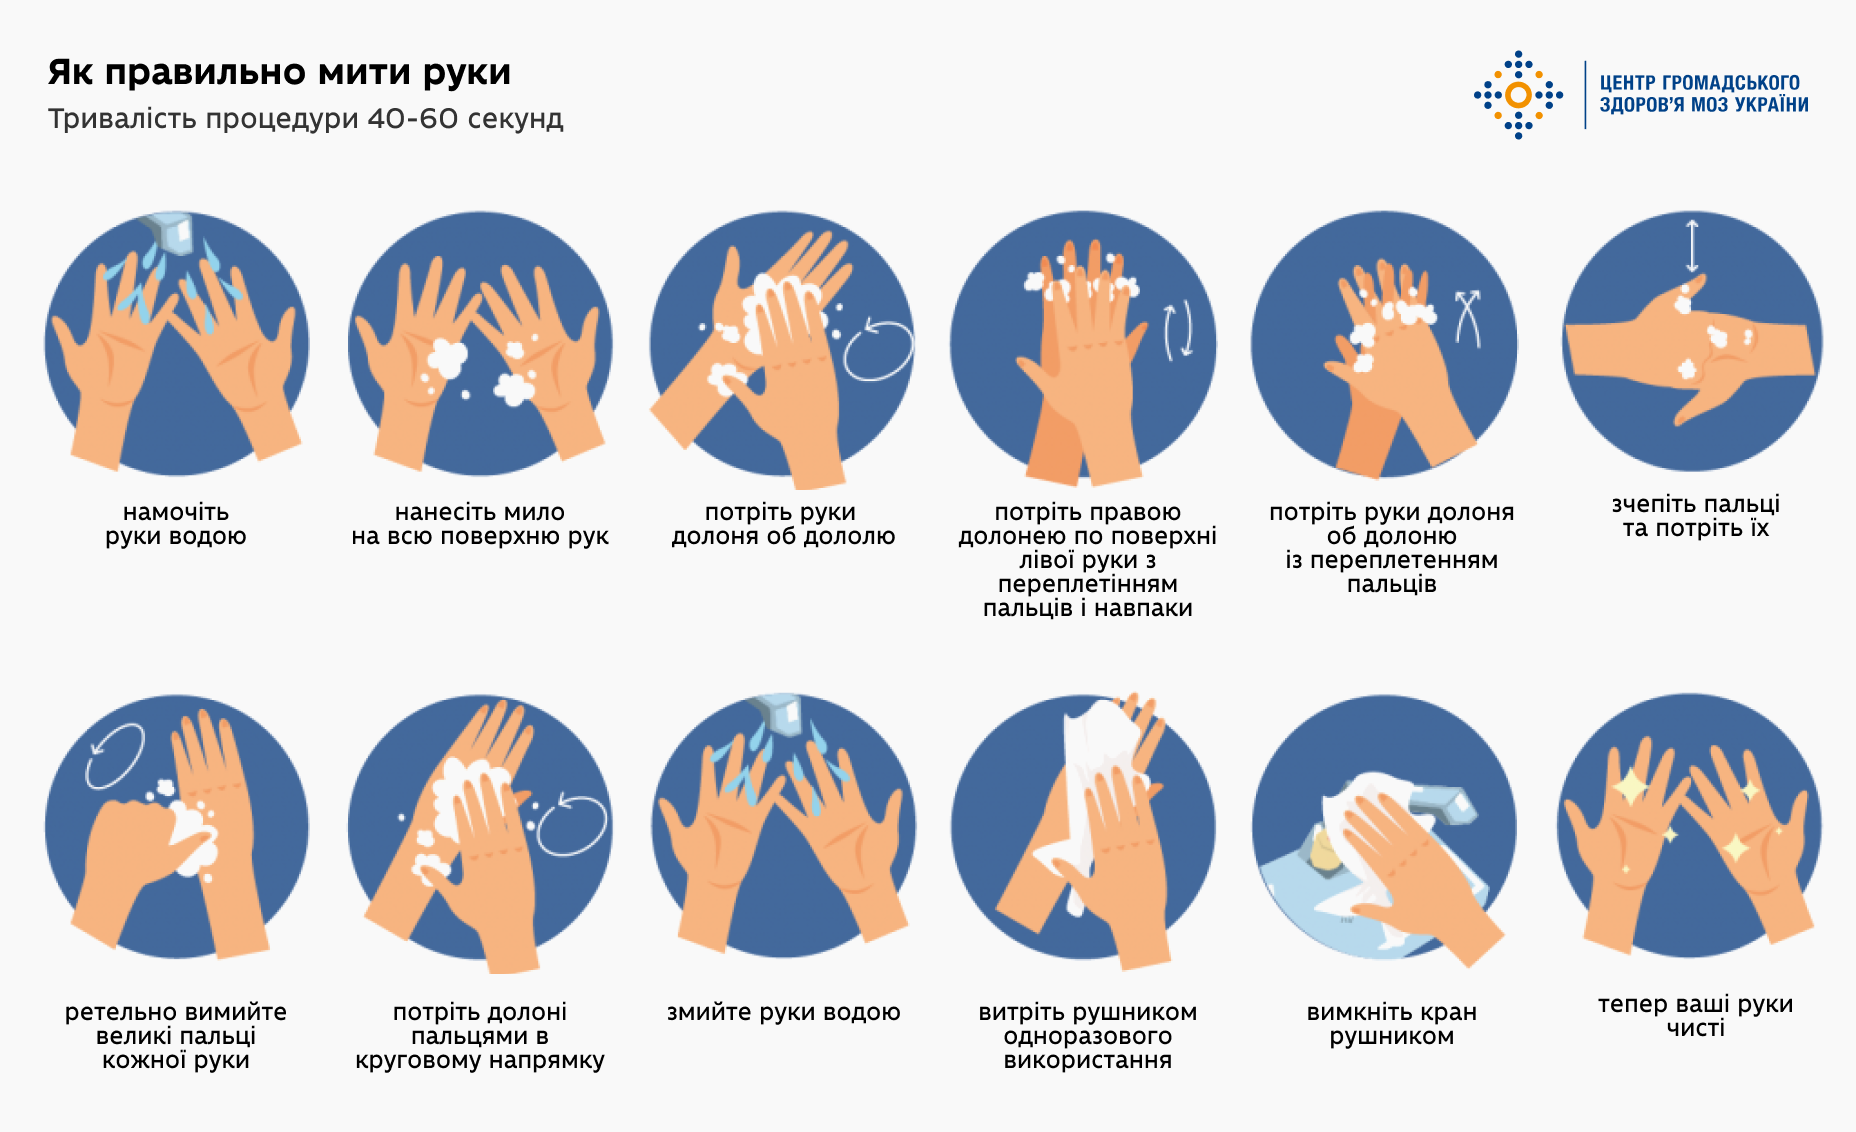 Як правильно мити руки, тривалість миття рук 40-60 секунд